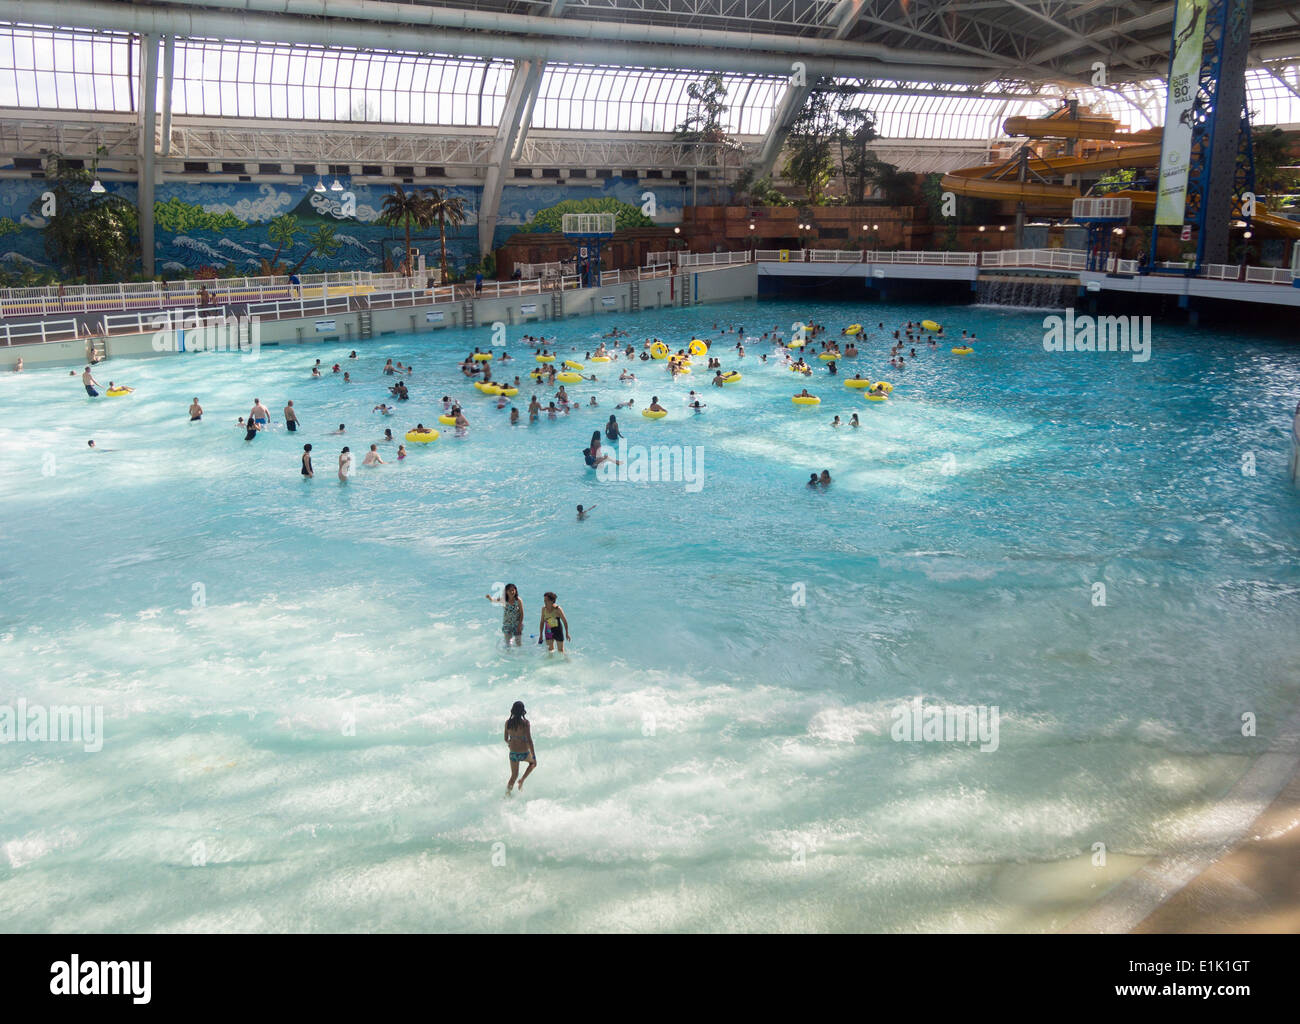 Piscina de olas en el West Edmonton Mall. La gran piscina cubierta en este enorme mall atrae a muchos bañistas Foto de stock